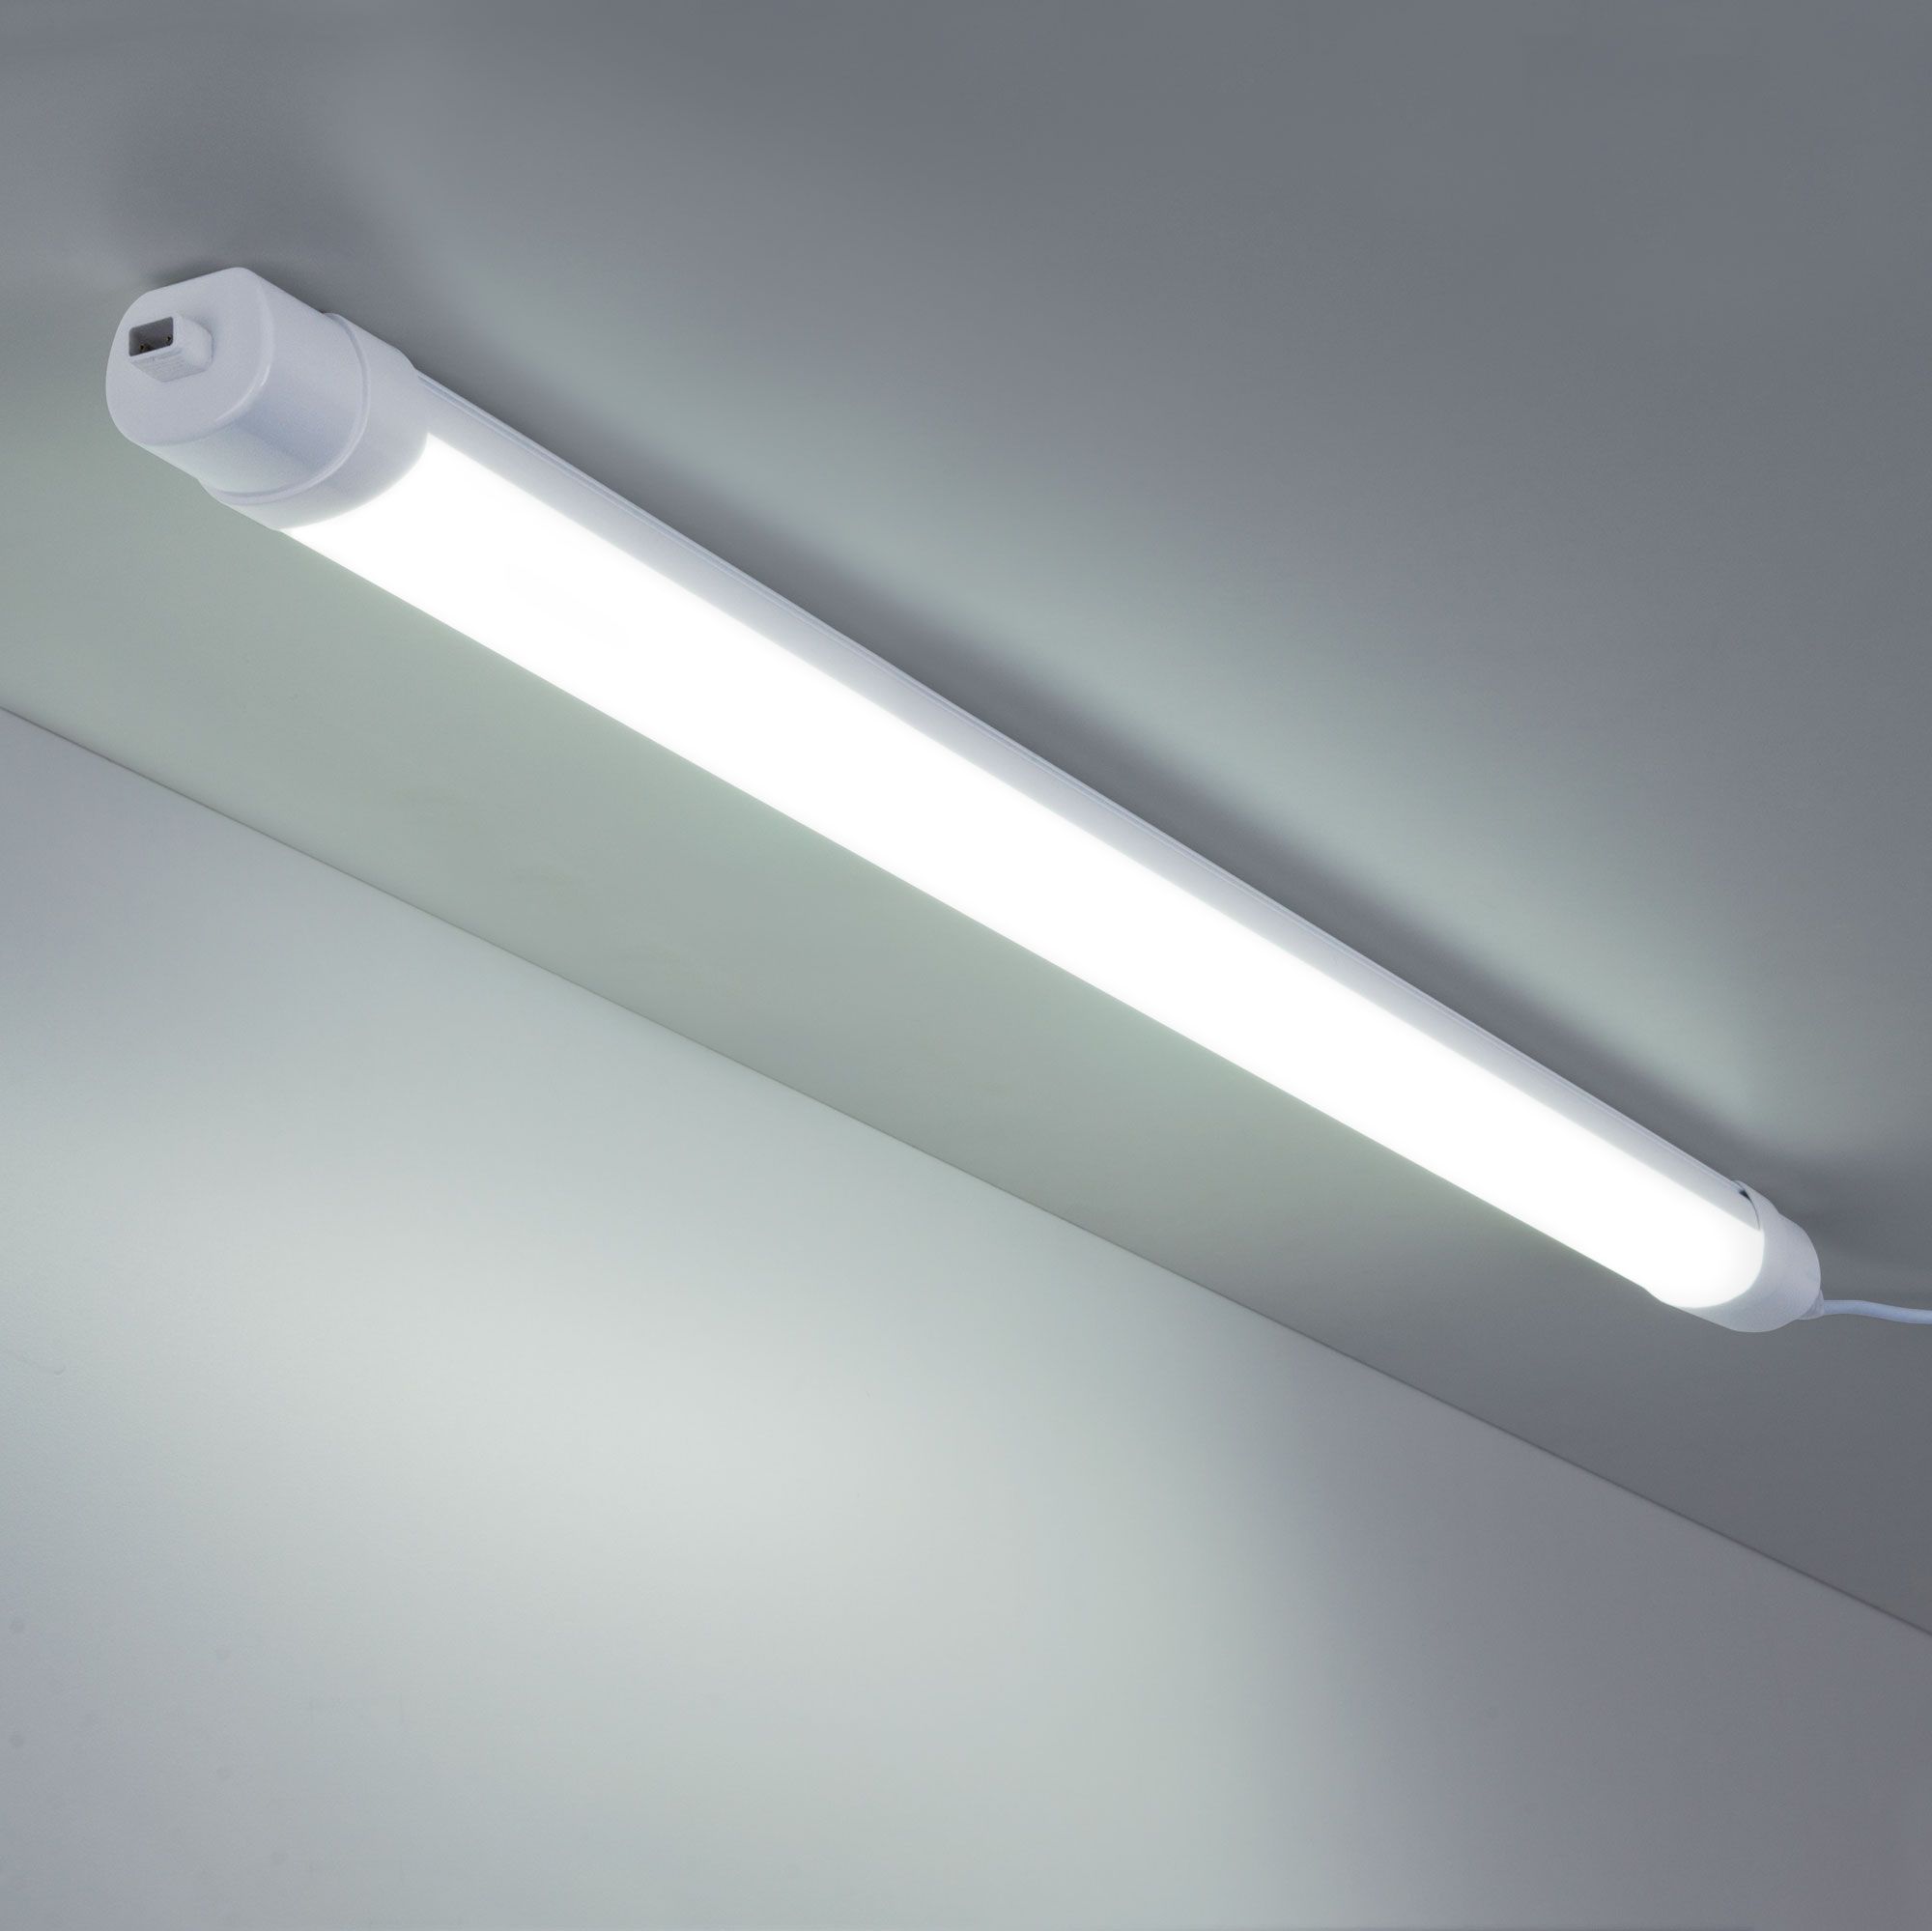 LED Светильник 120 см 36Вт Connect белый пылевлагозащищенный светодиодный светильник LTB34